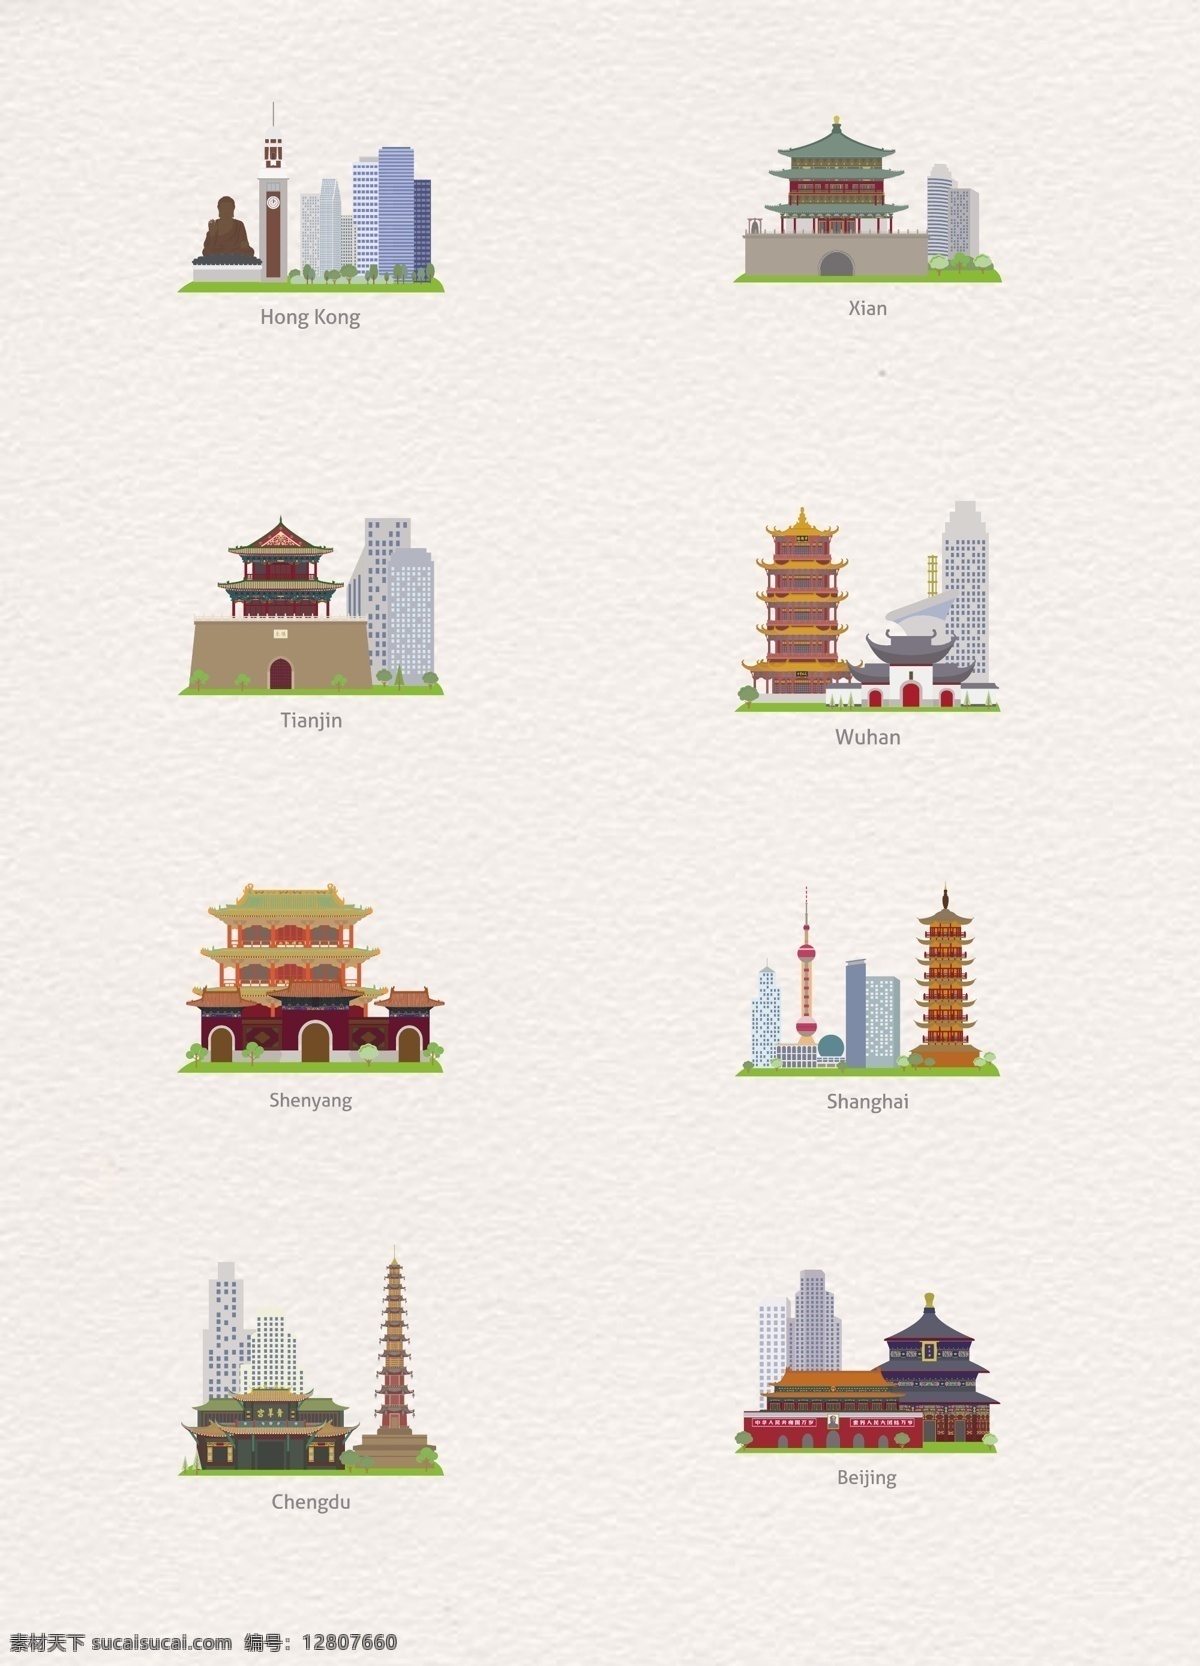 彩色 扁平化 中国 著名 城市 建筑设计 卡通 矢量图 上海 中国建筑 香港 西安 武汉 天津 沈阳 成都 背景